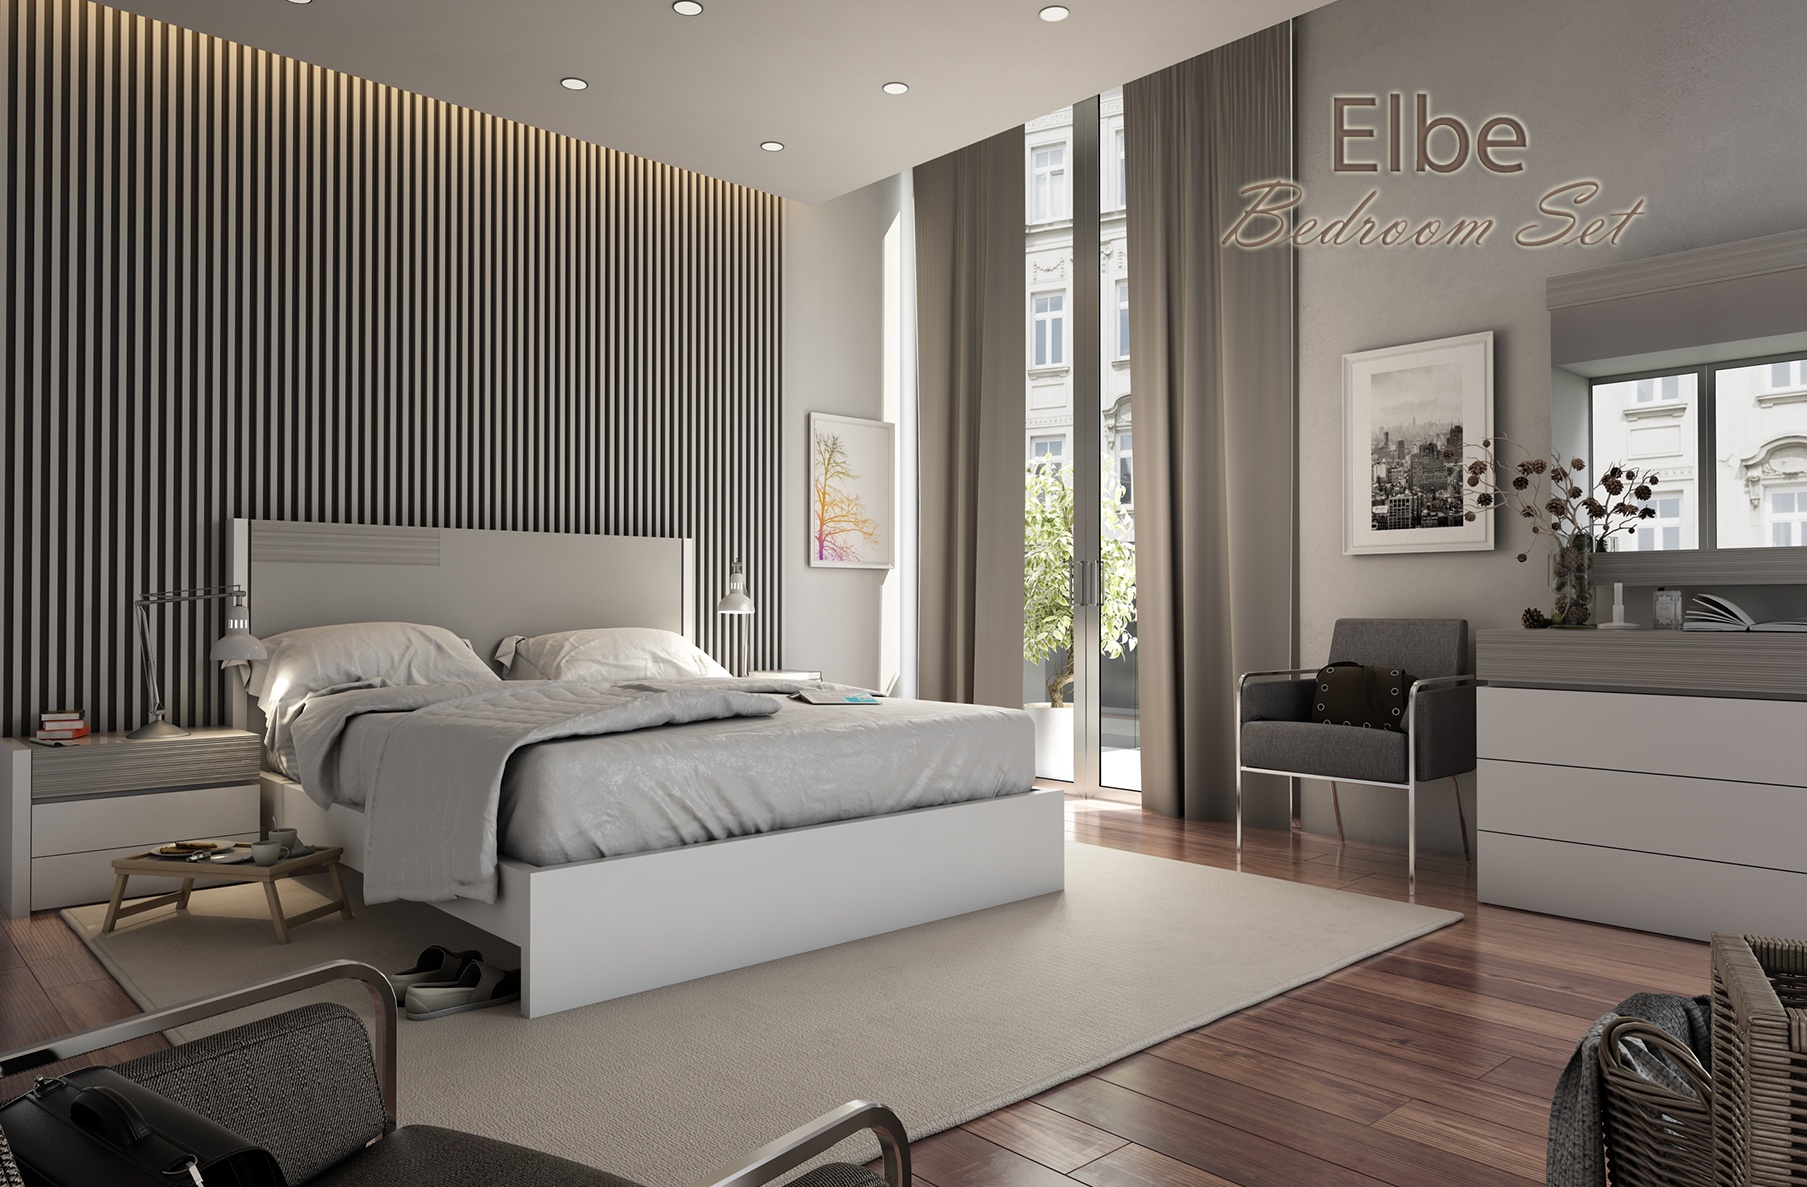 Elbe Bedroom, Cheap